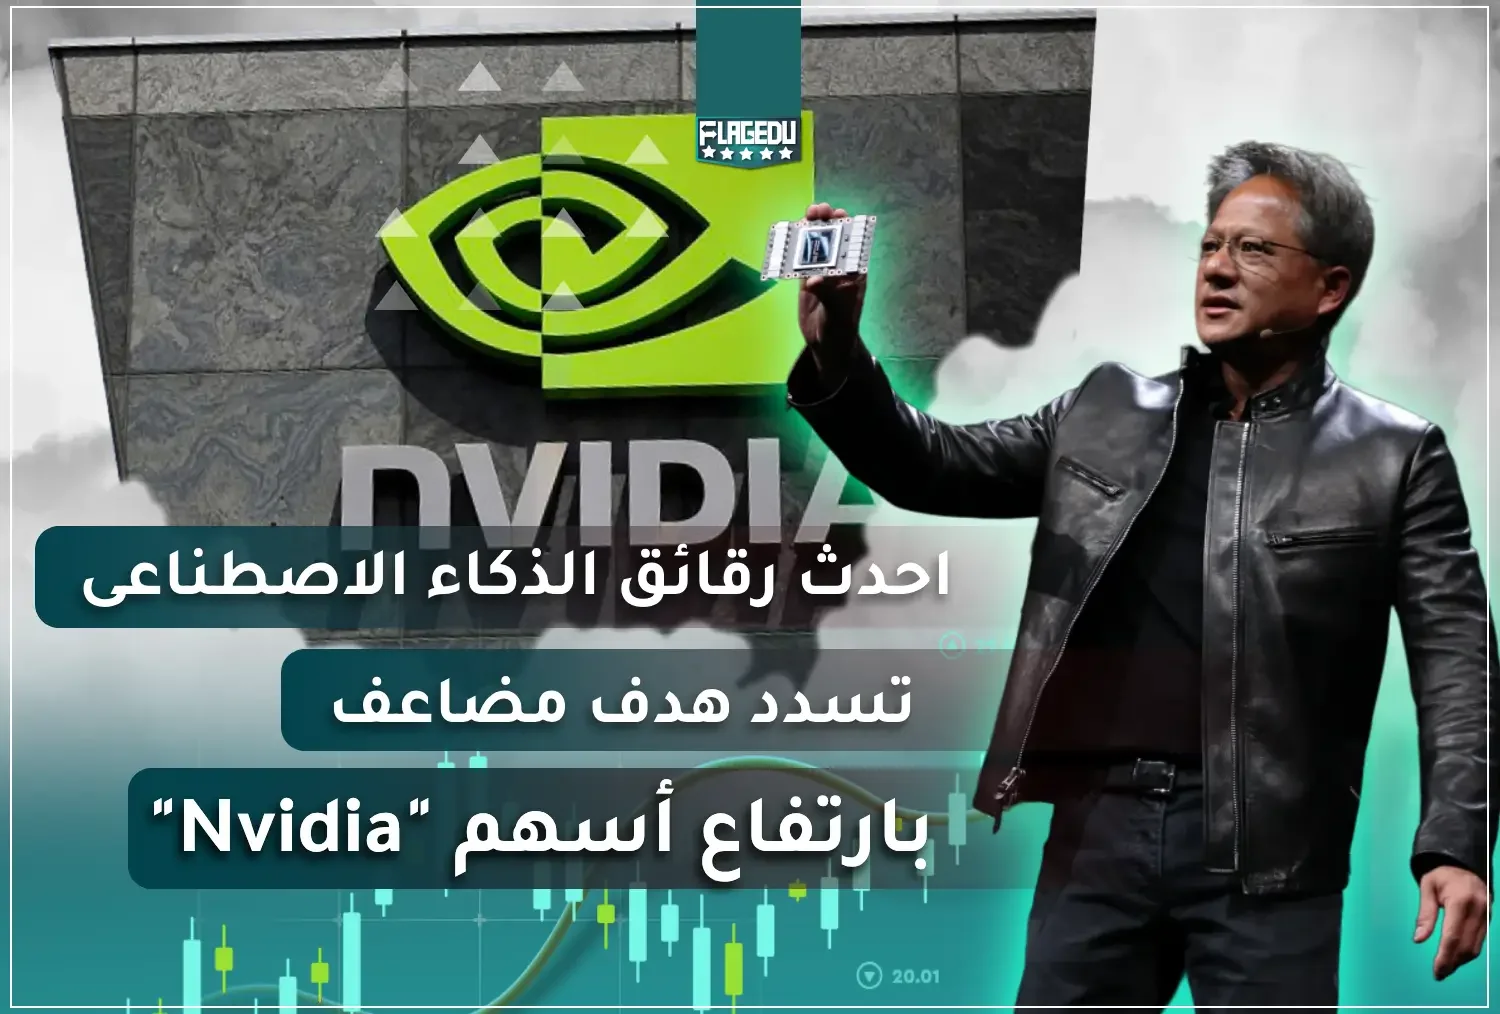 Nvidia shares rise